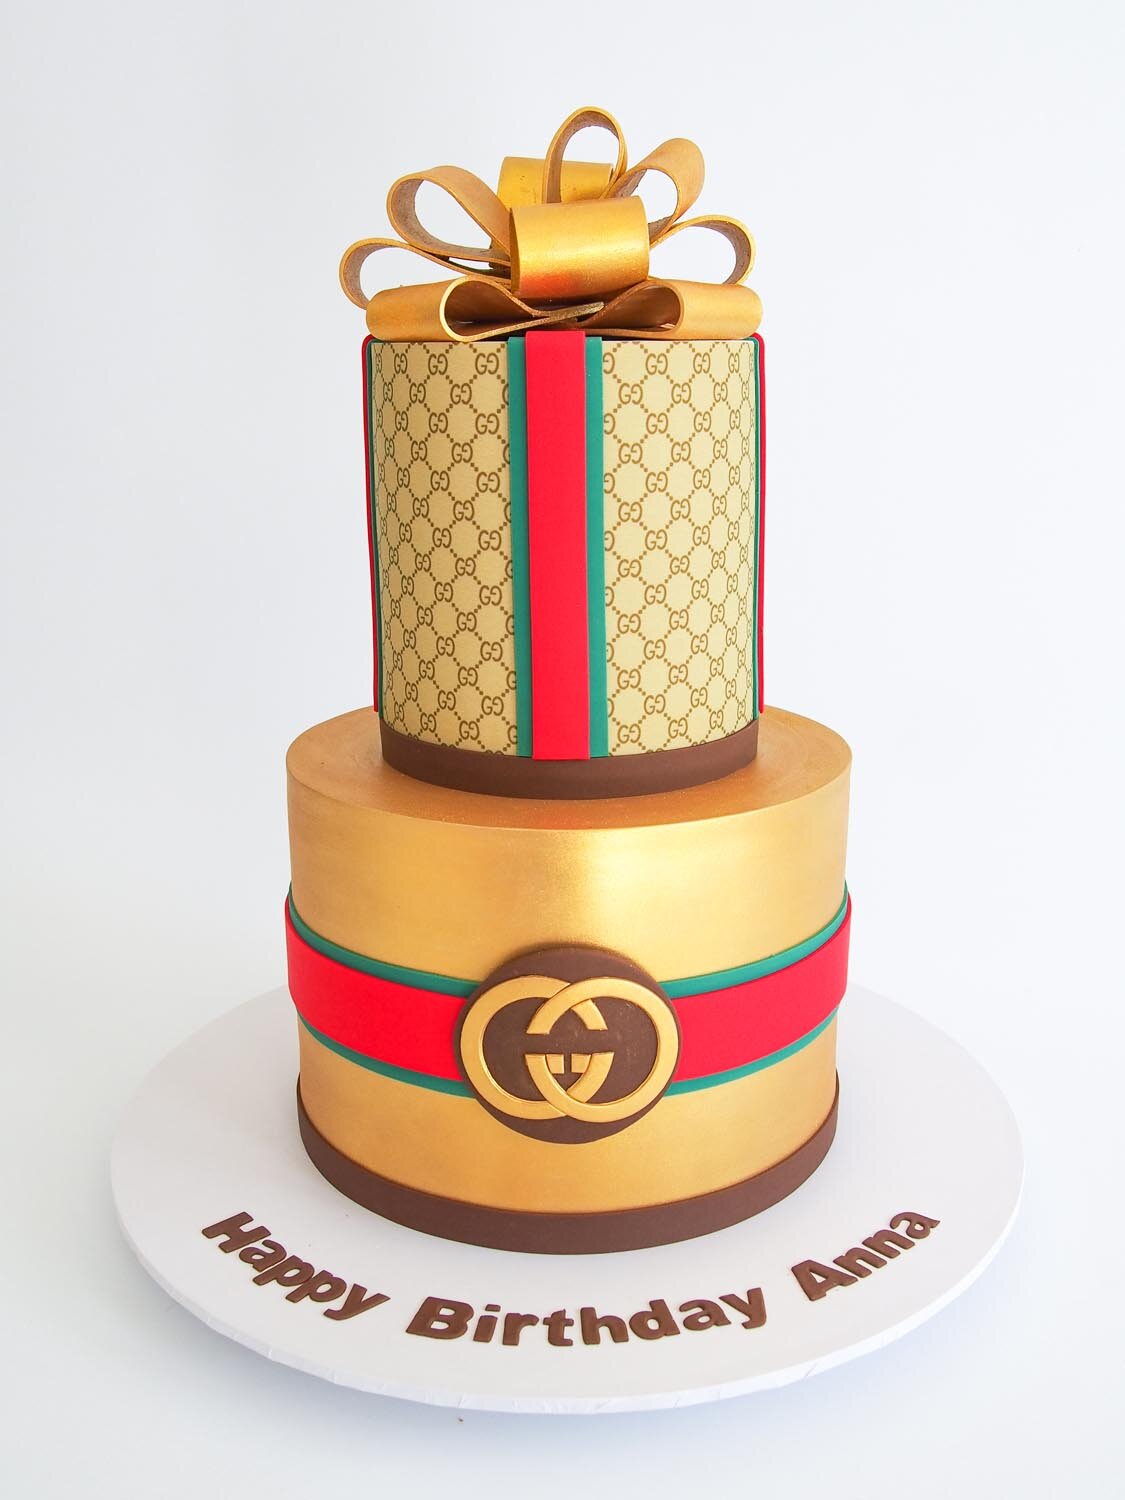 Celebration Cakes | Our Portfolio